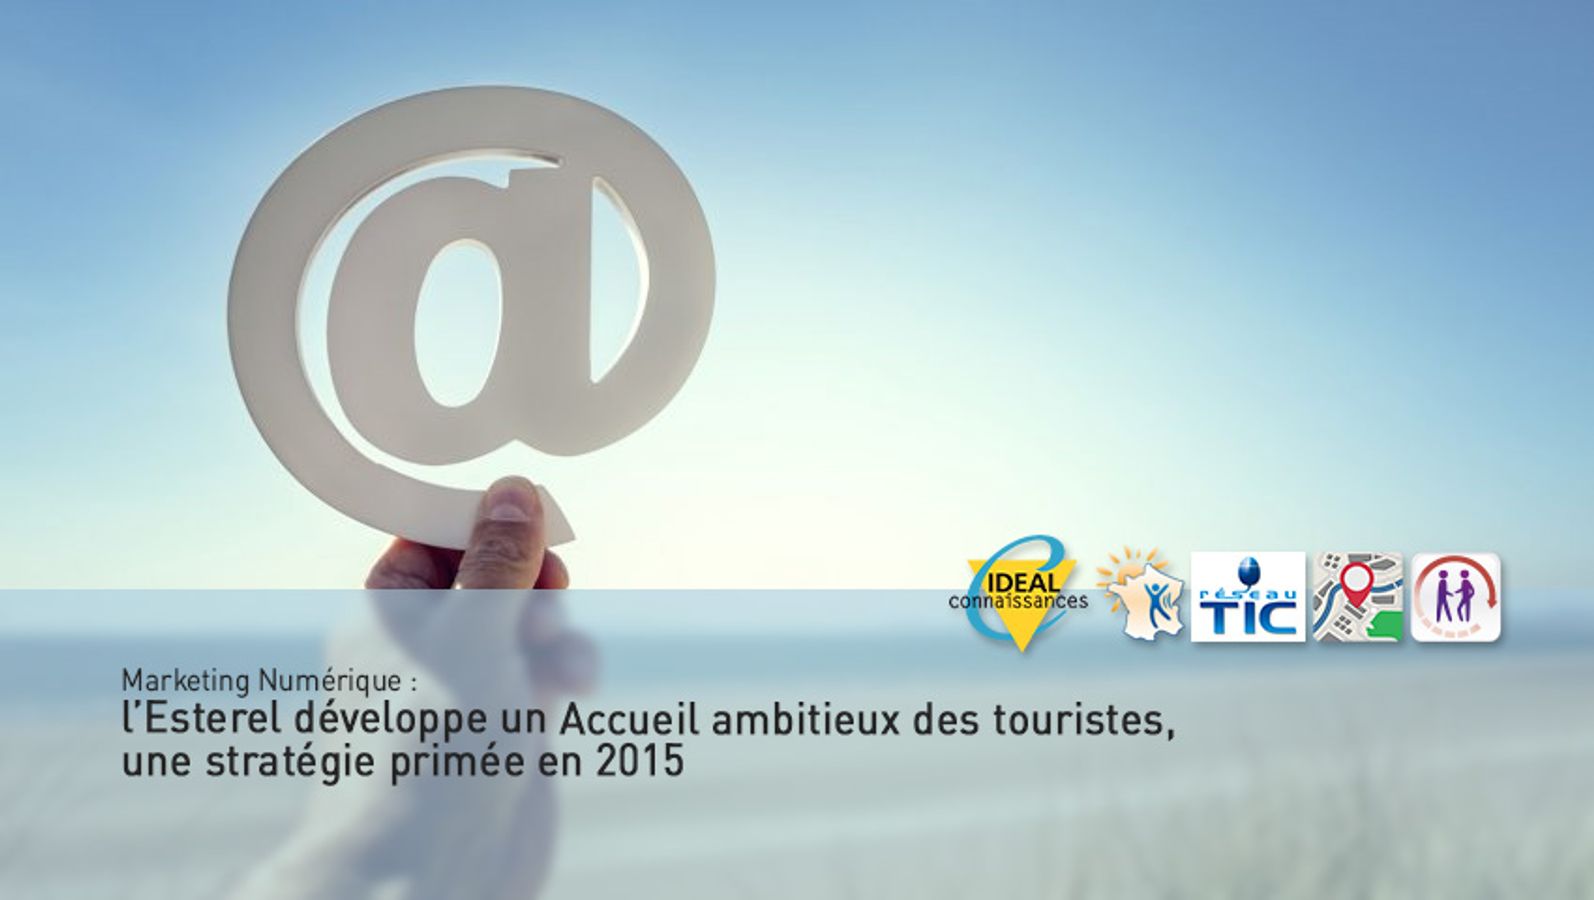 Marketing Numérique : l’Esterel développe un Accueil ambitieux des touristes, une stratégie primée en 2015